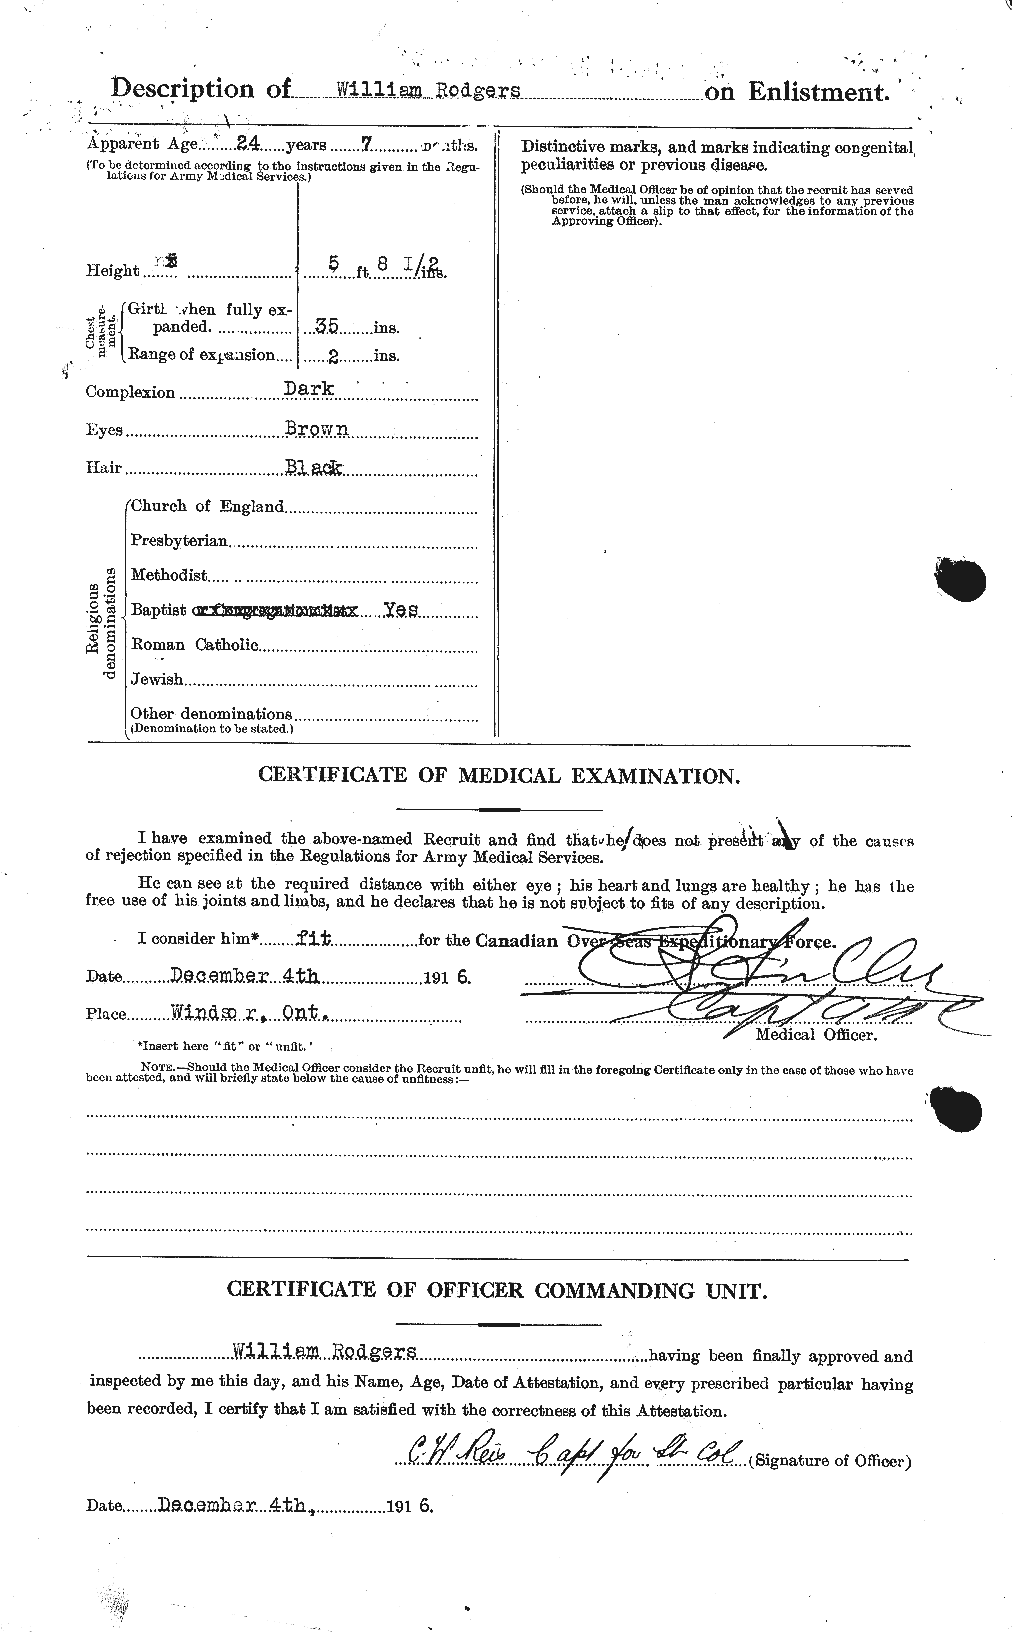 Dossiers du Personnel de la Première Guerre mondiale - CEC 608394b